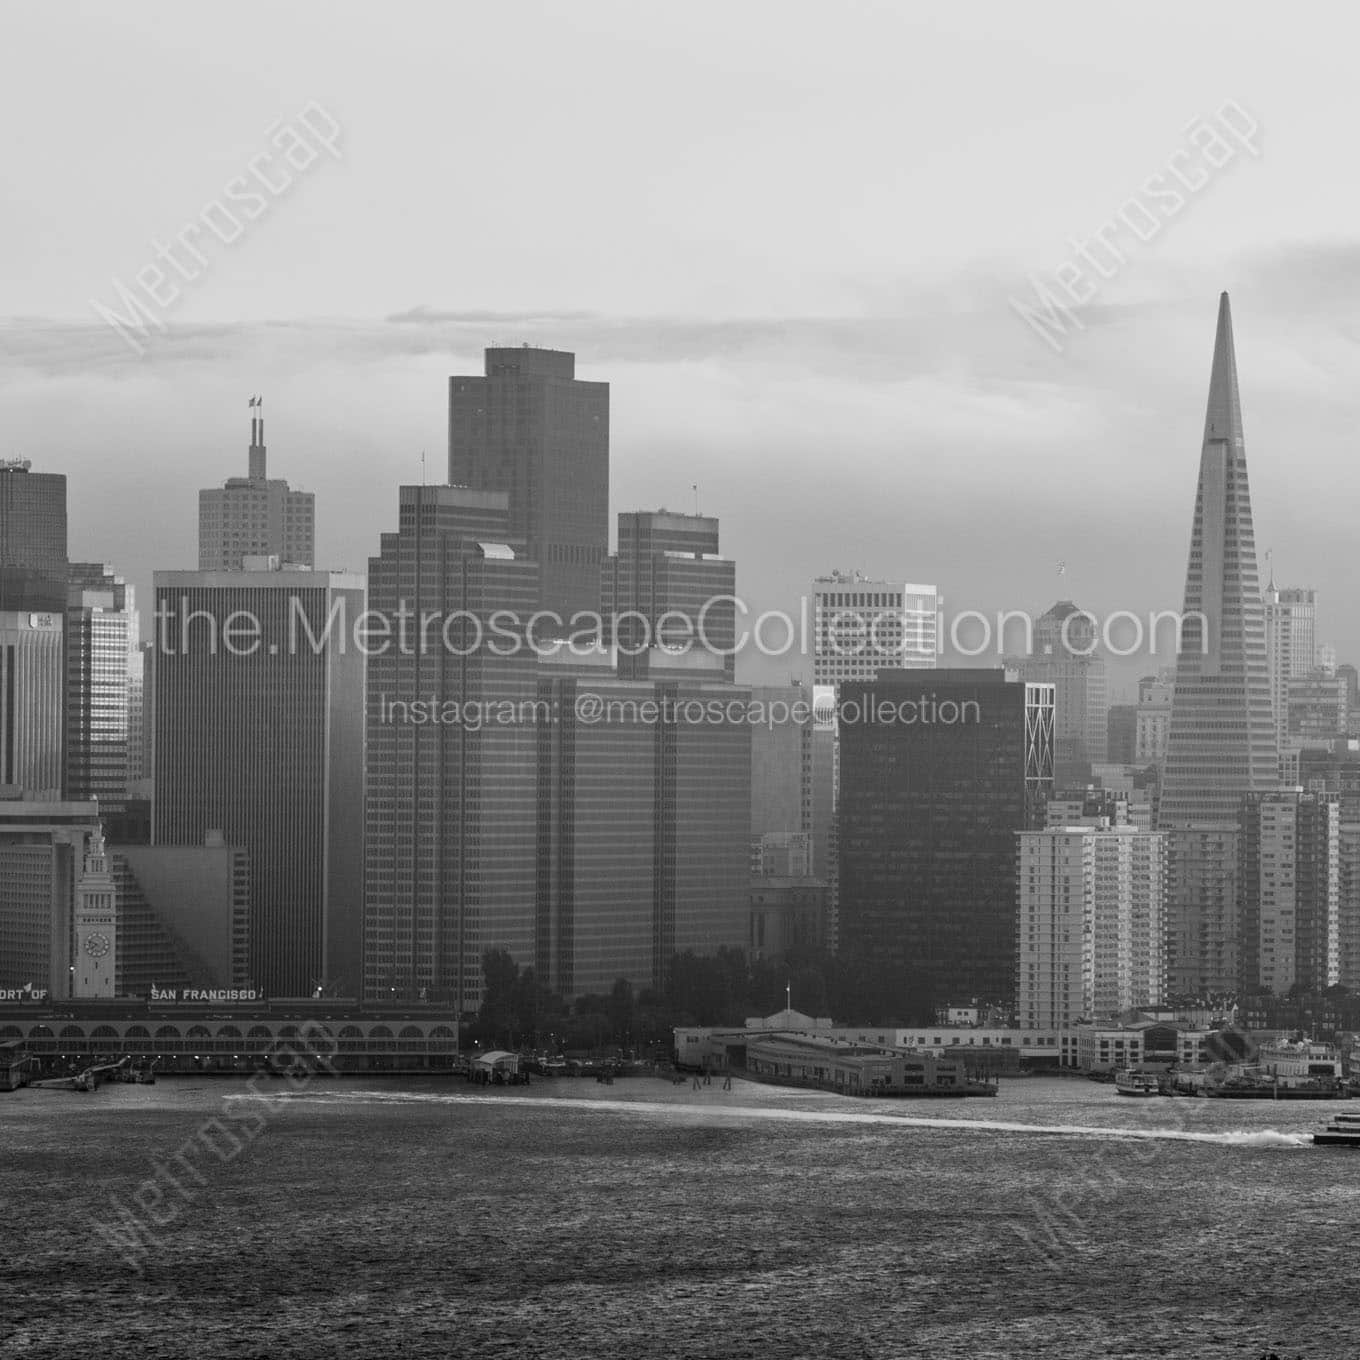 fog engulfs san francisco skyline Black & White Office Art